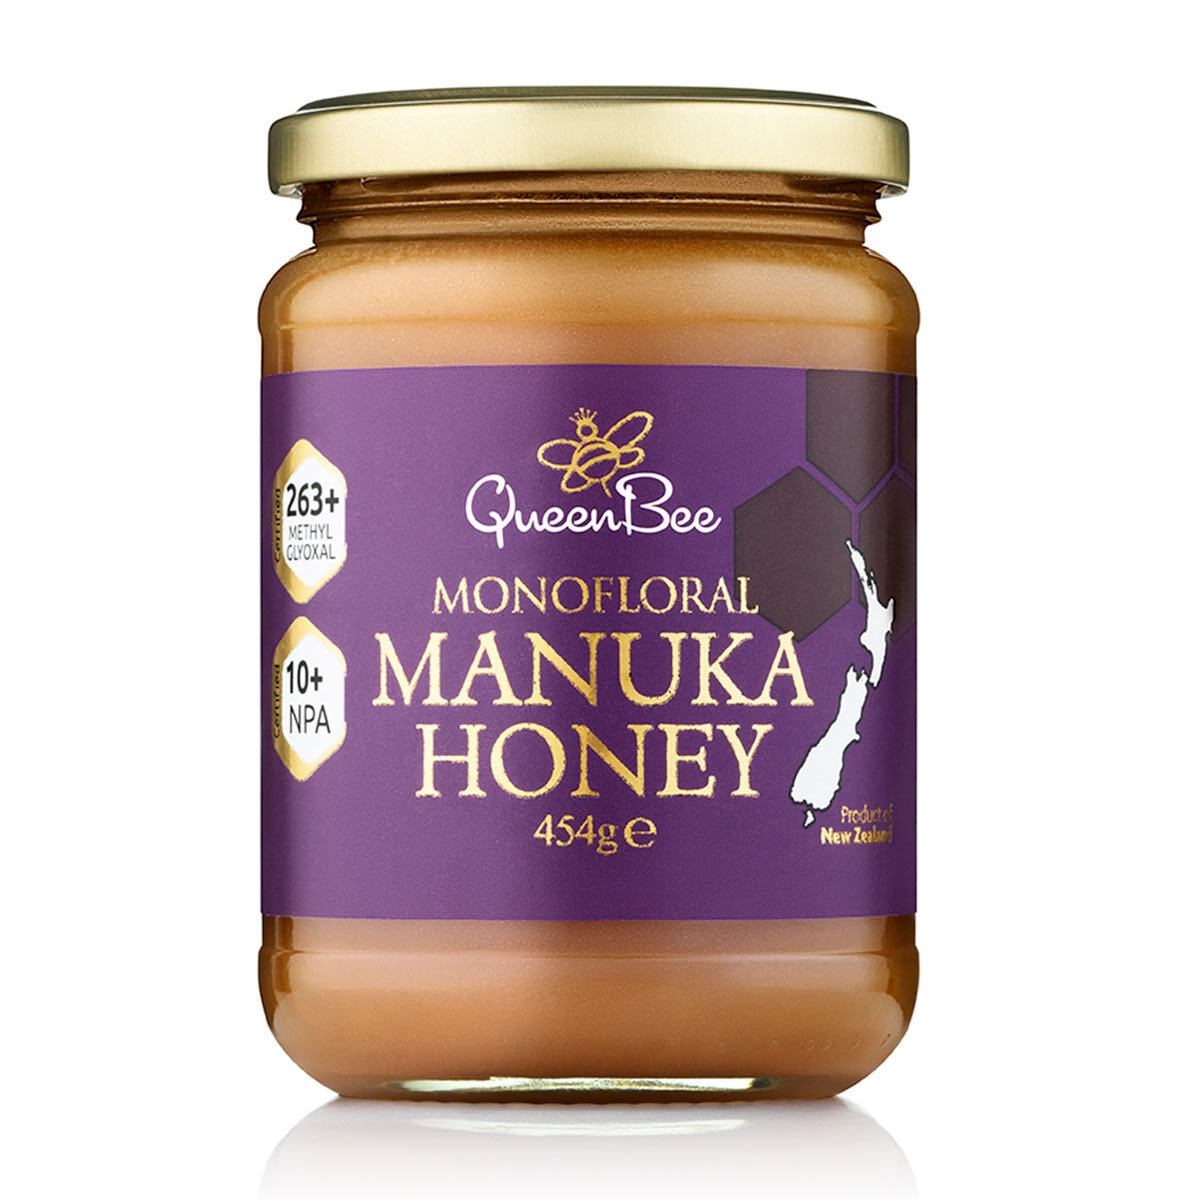 Queen Bee Monofloral Manuka Honey MGO 263+, 454g